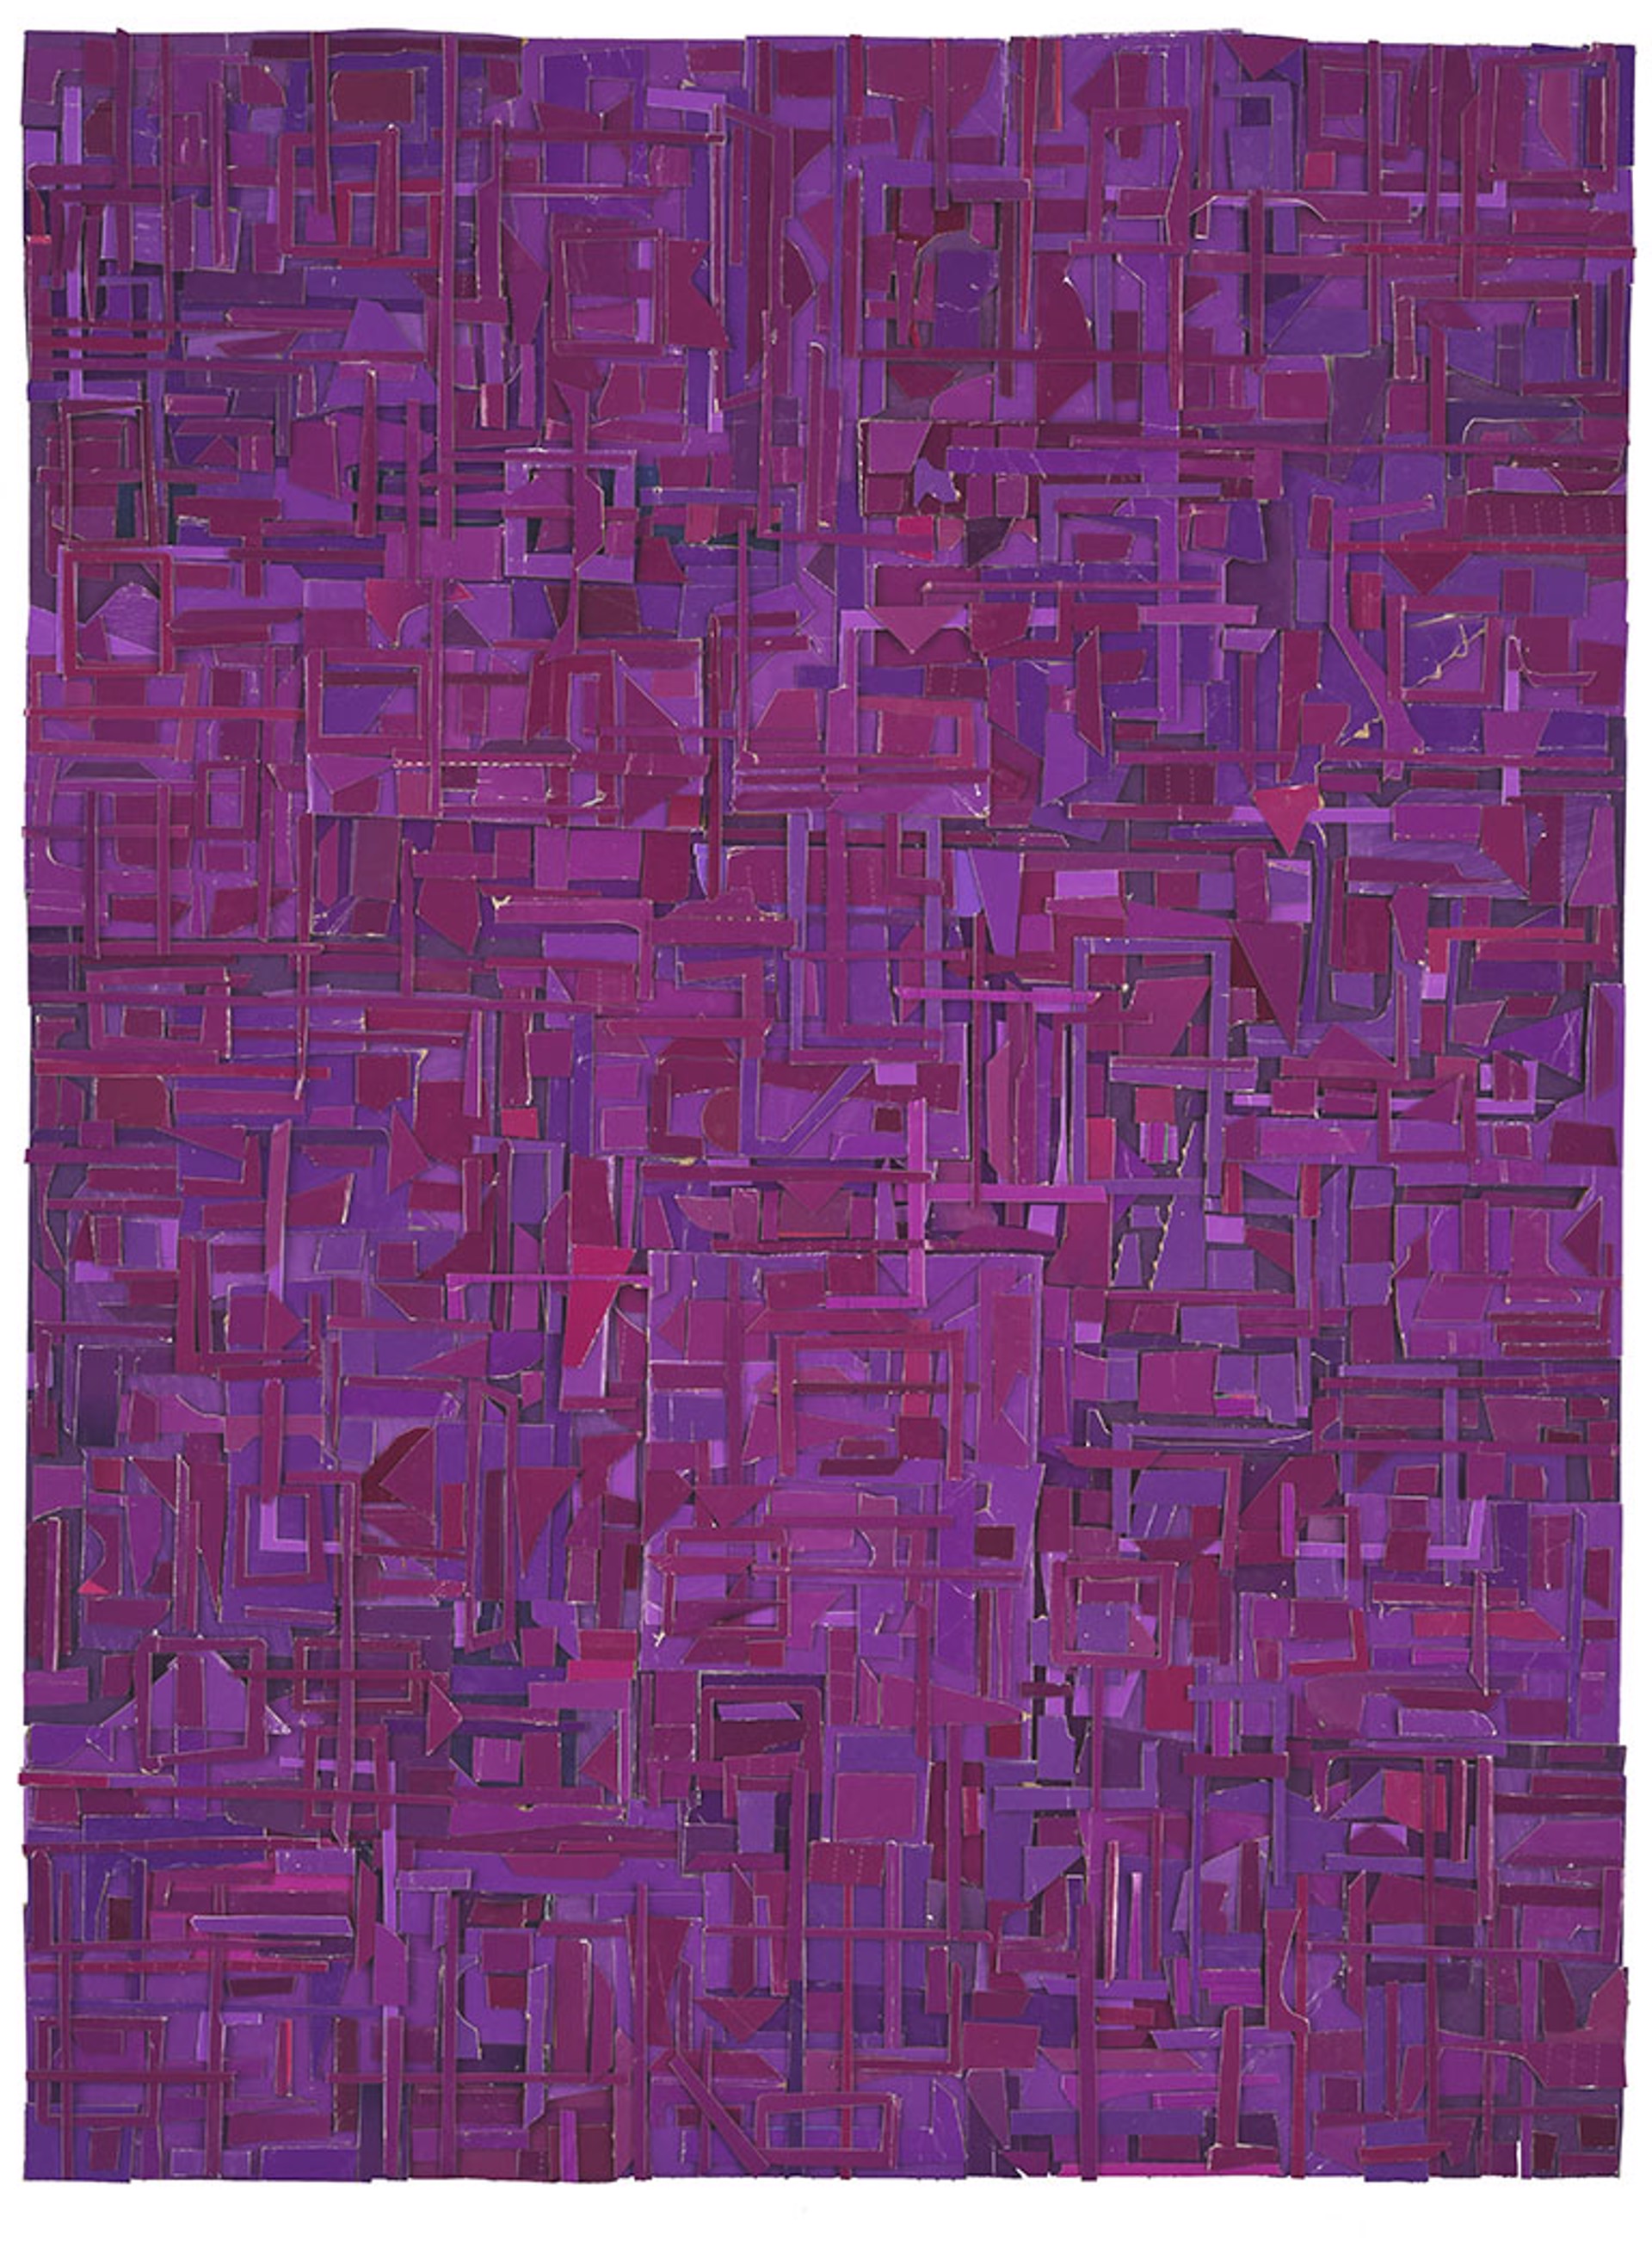 Derivations (in purple) by Matt Gonzalez